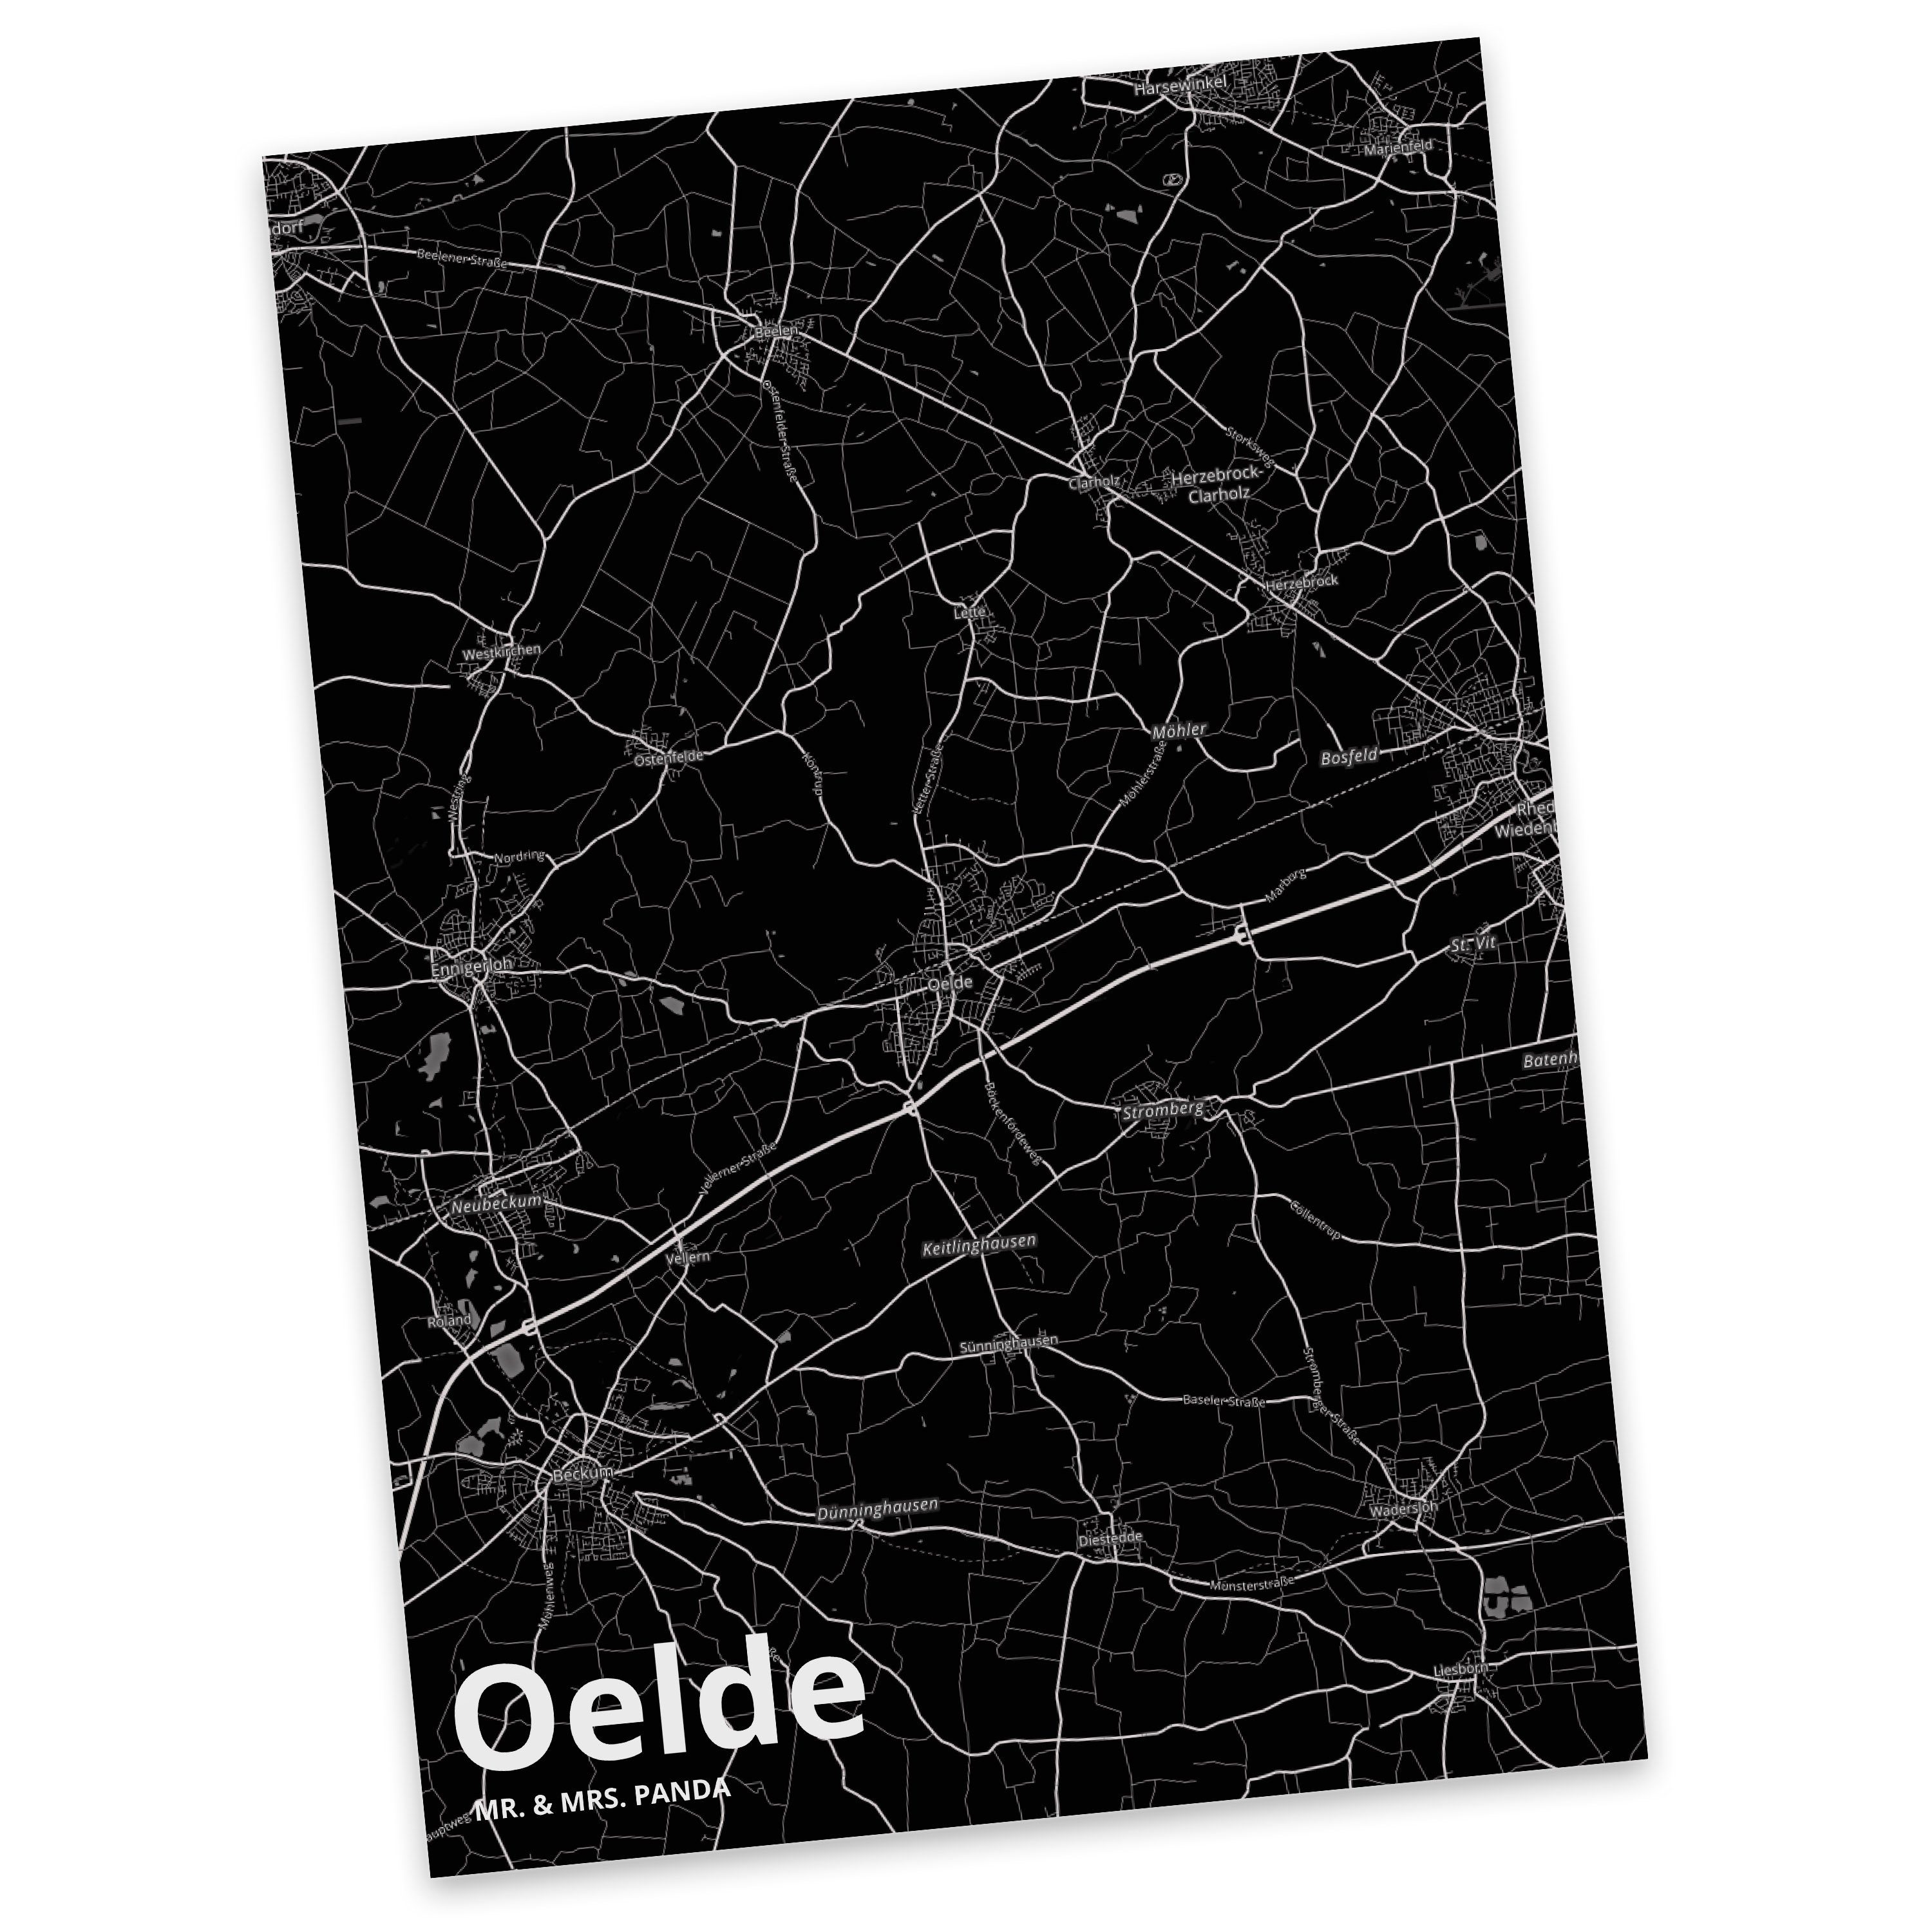 Mr. & Mrs. Panda Postkarte Oelde - Geschenk, Städte, Karte, Einladung, Ansichtskarte, Dorf, Ort